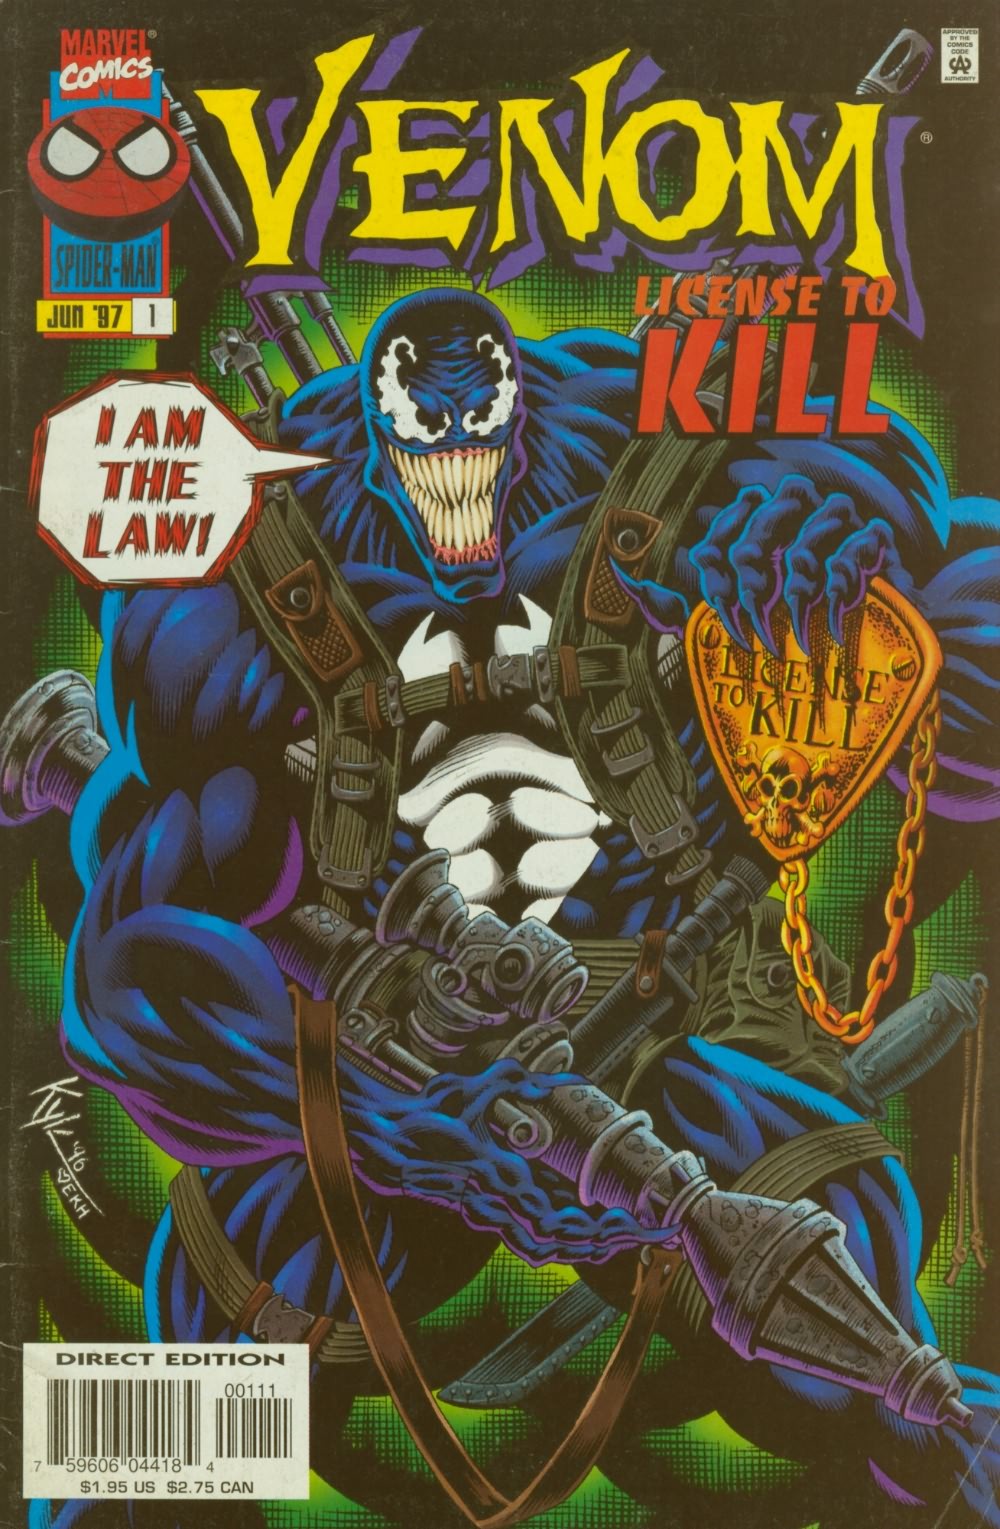 Read online Venom: License to Kill comic -  Issue #1 - 1